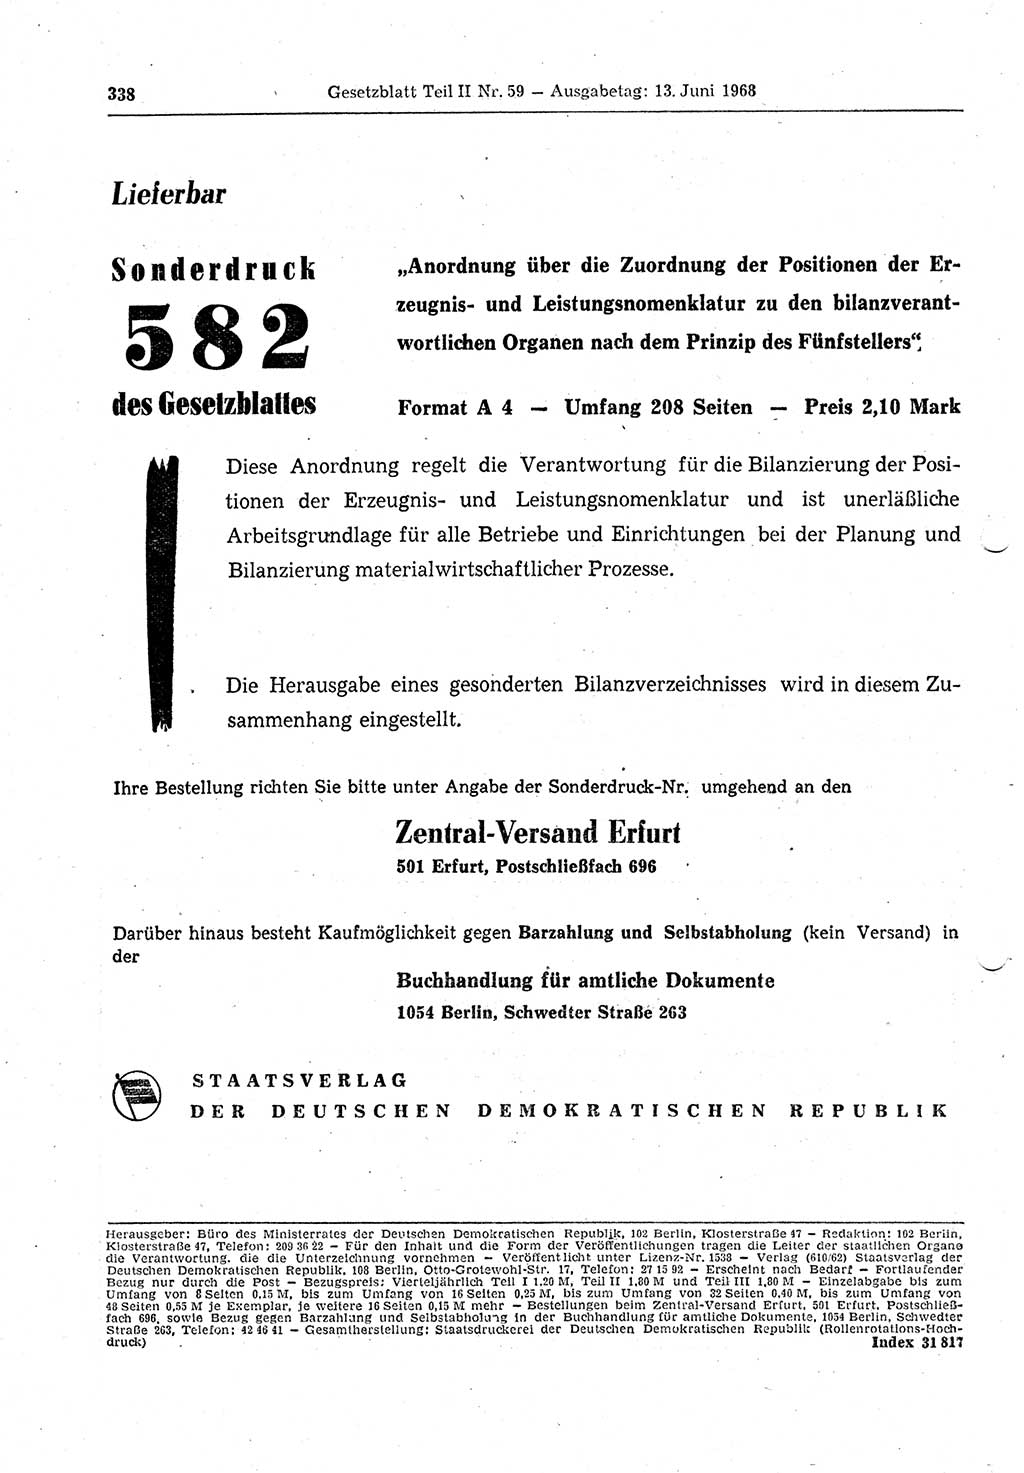 Gesetzblatt (GBl.) der Deutschen Demokratischen Republik (DDR) Teil ⅠⅠ 1968, Seite 338 (GBl. DDR ⅠⅠ 1968, S. 338)